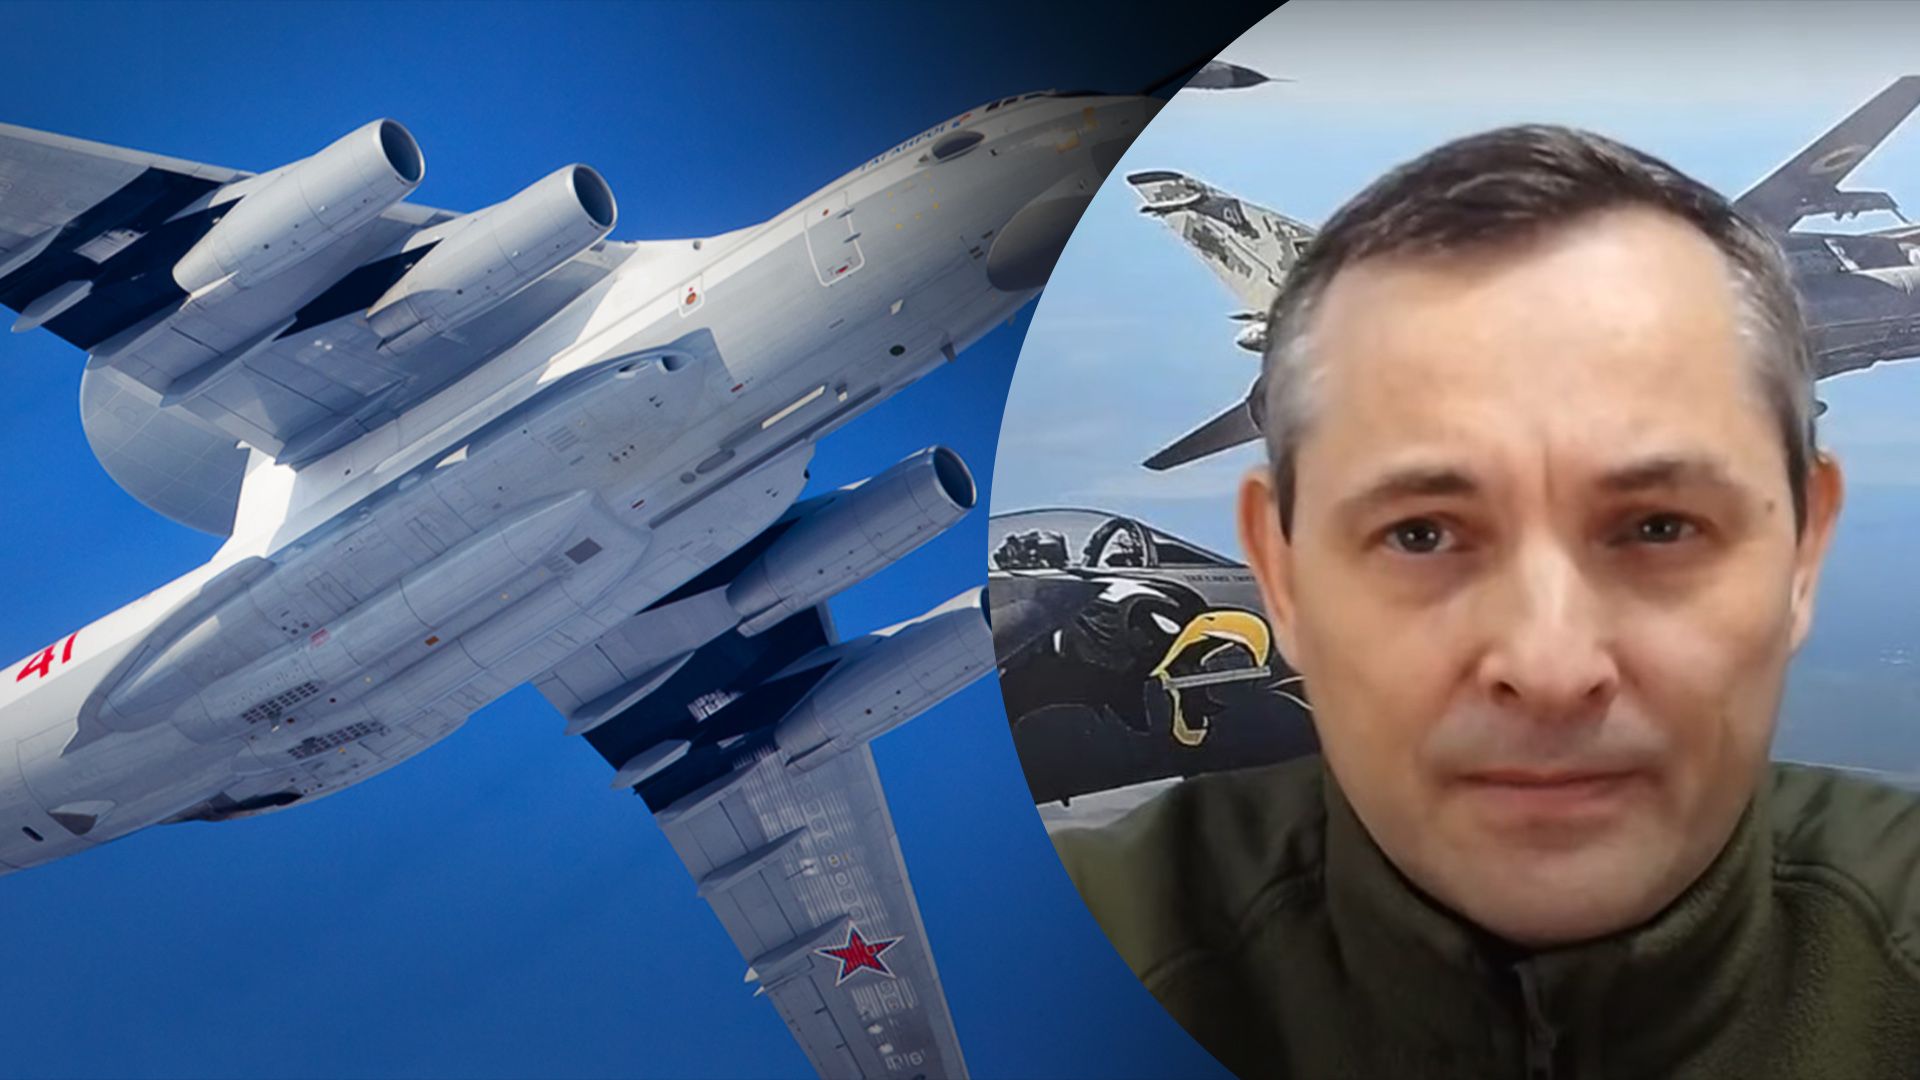 Игнат объяснил, будет ли у России кризис пилотов из-за уничтожения А-50